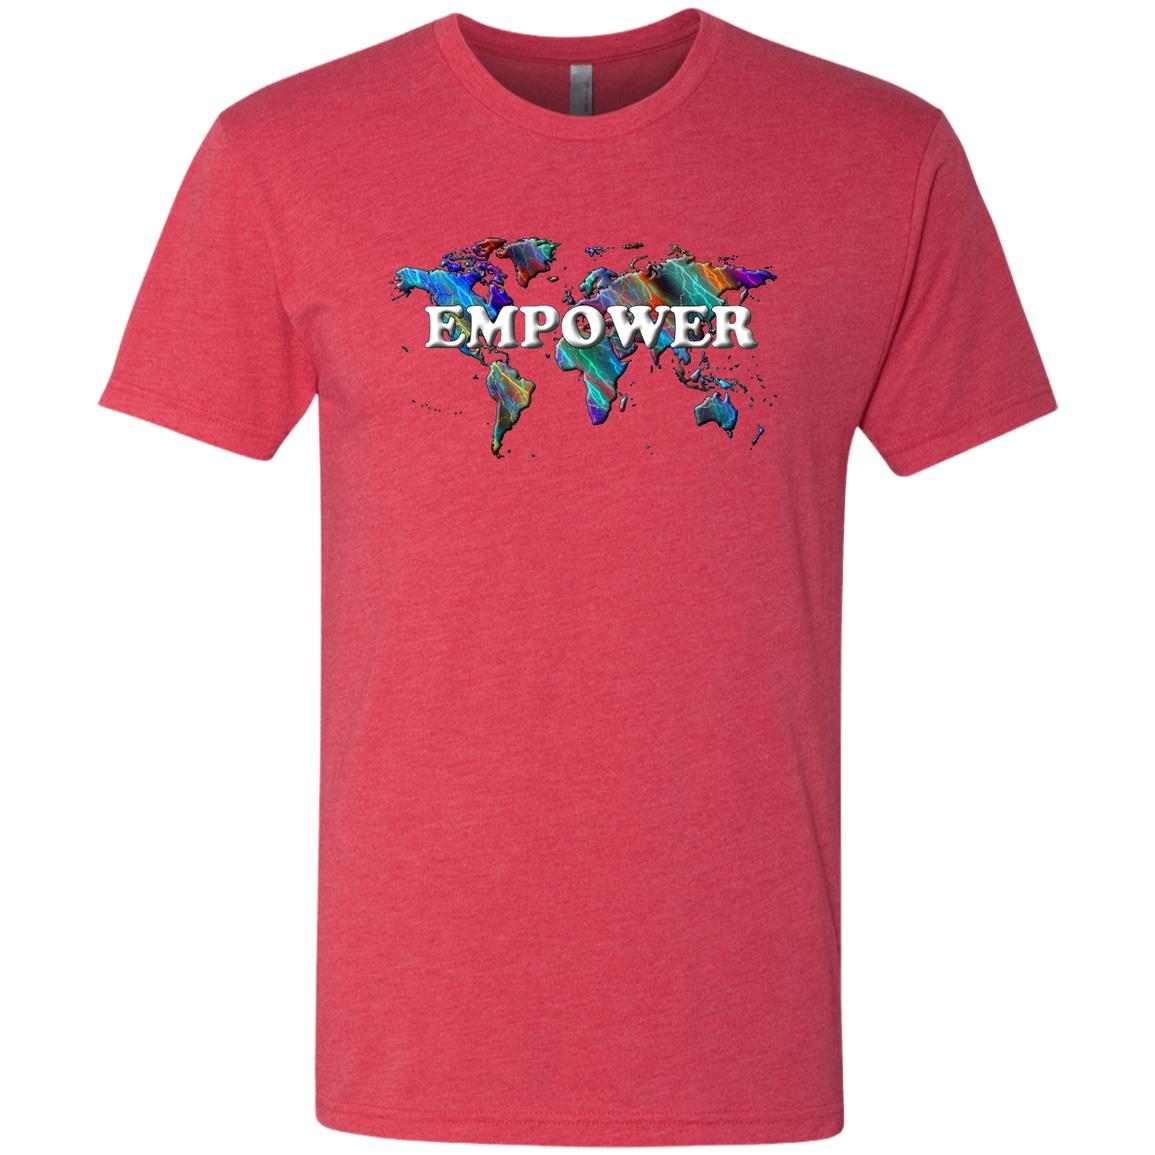 Empower Statement T-Shirt